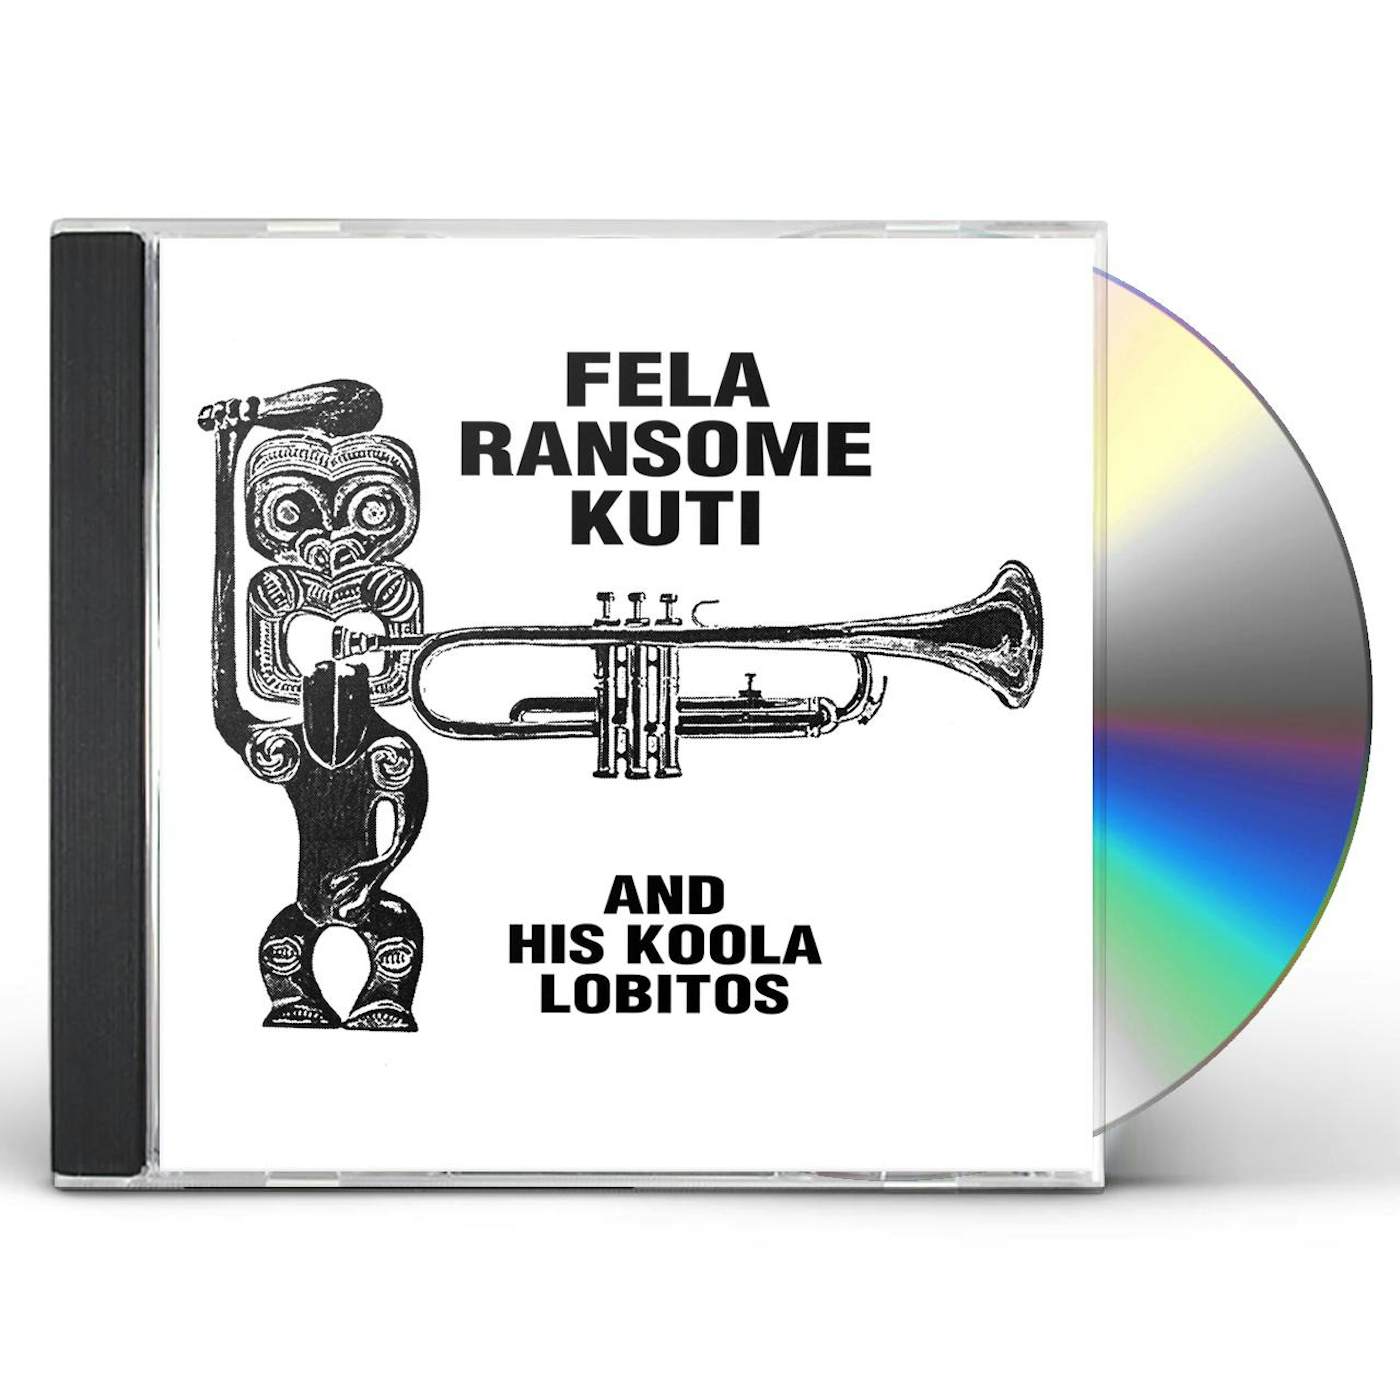 Fela Ransome Kuti & His Koola Lobitos HIGHLIFE-JAZZ & AFRO-SOUL (1963-1969) CD